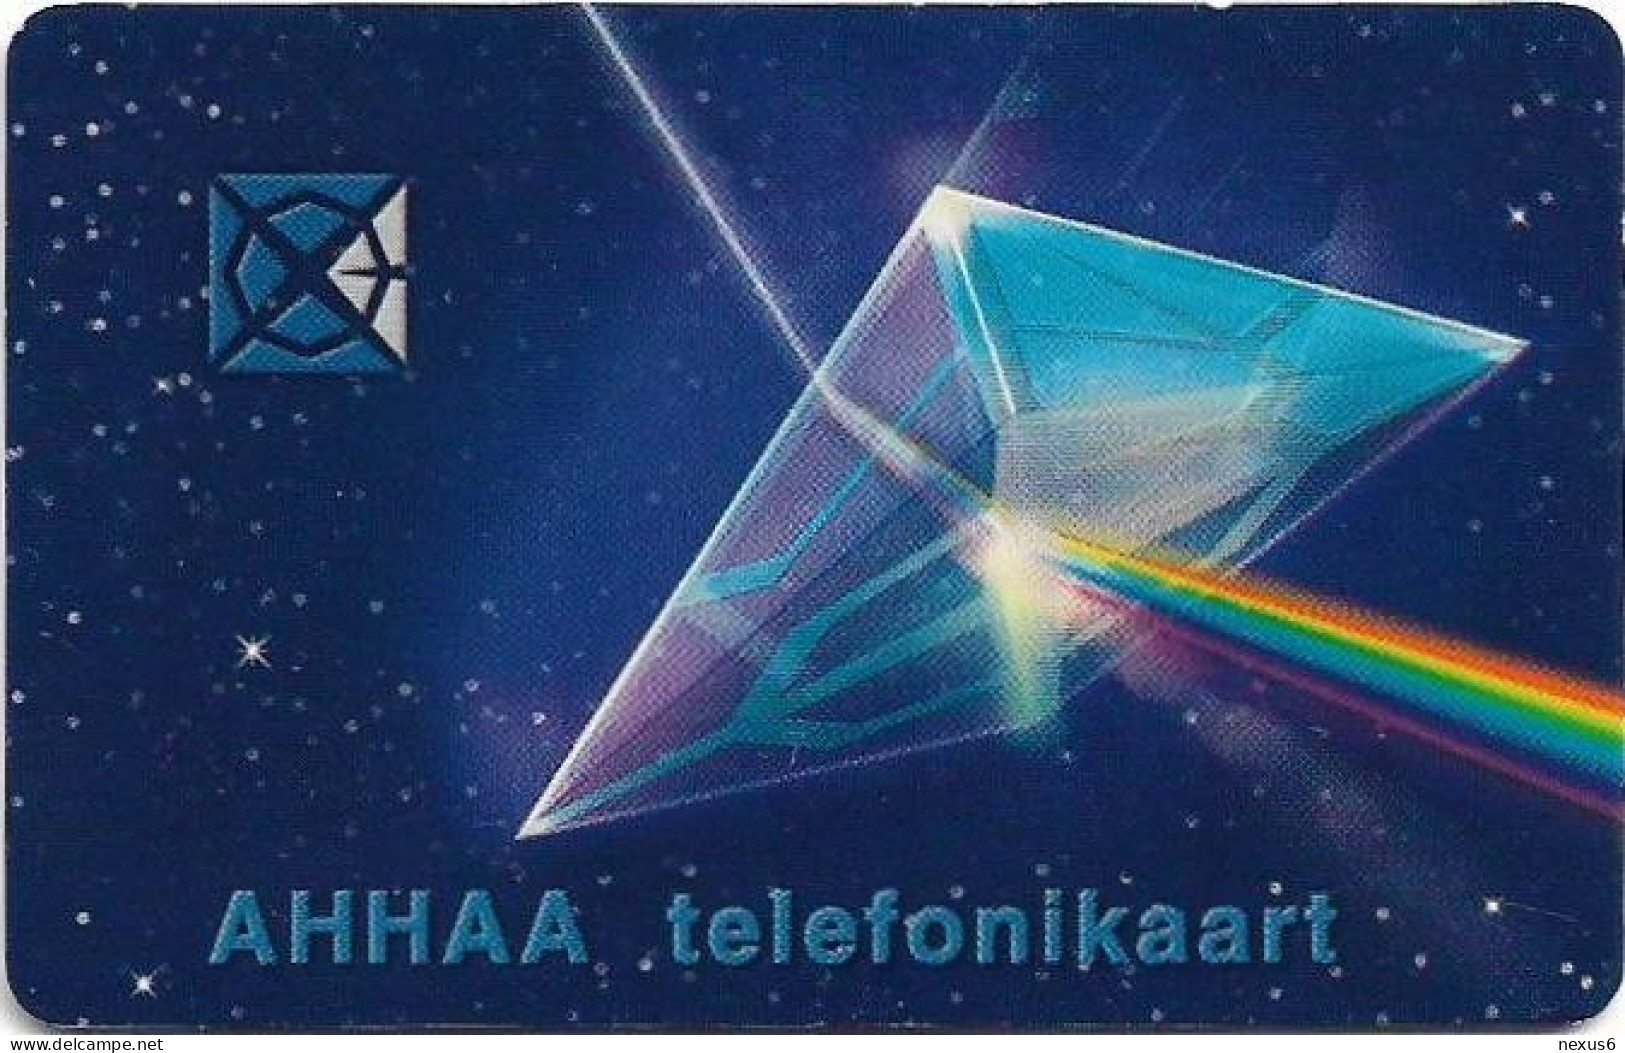 Estonia - Eesti Telefon - Ahhaa! - ET0145 - 03.2001, 50Kr, 20.000ex, Used - Estonia